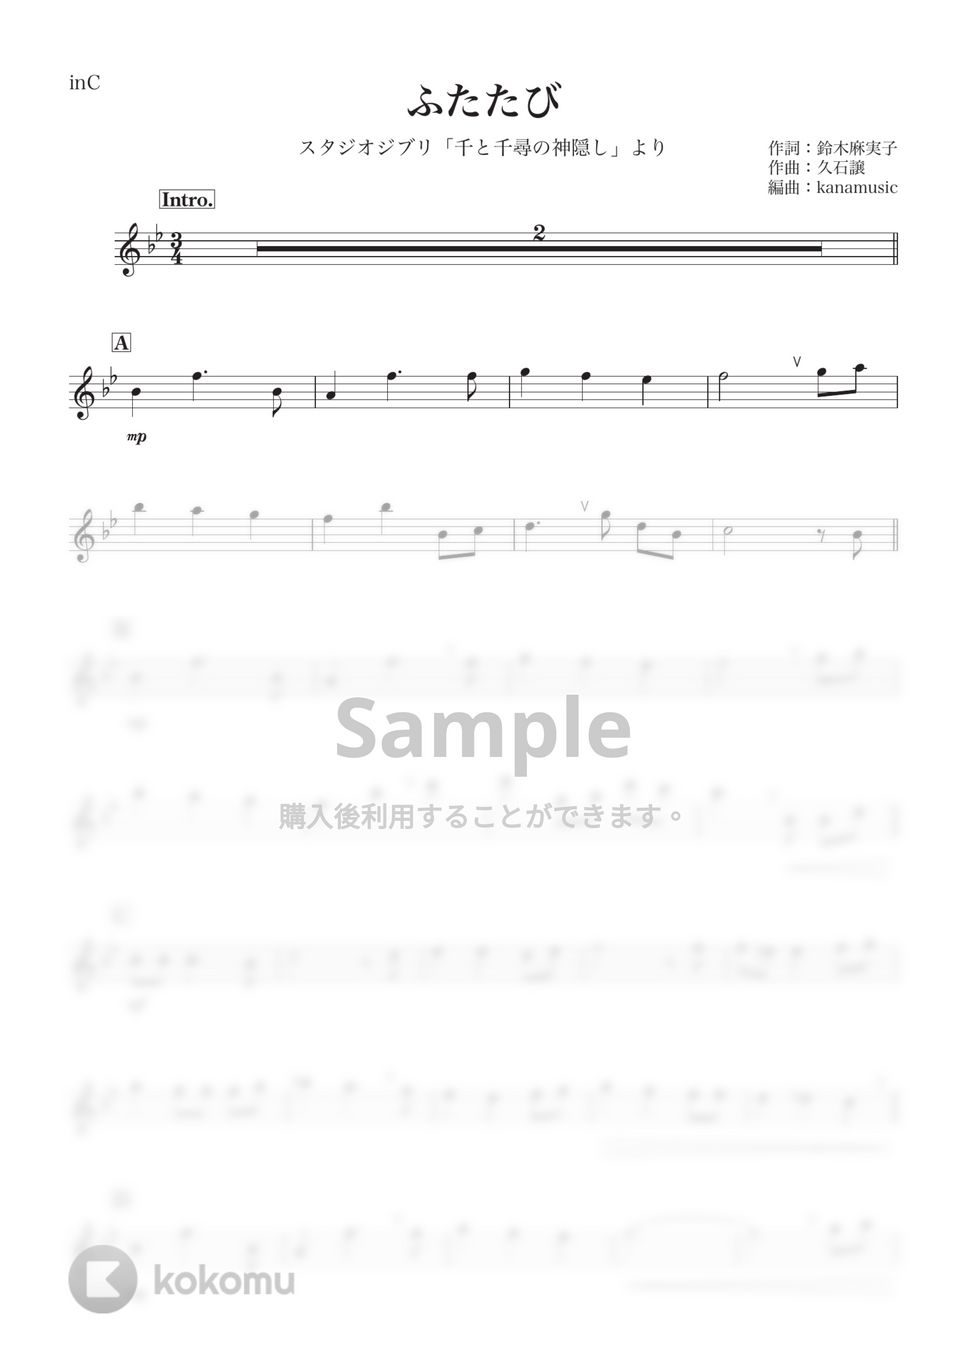 千と千尋の神隠し - ふたたび (C) by kanamusic